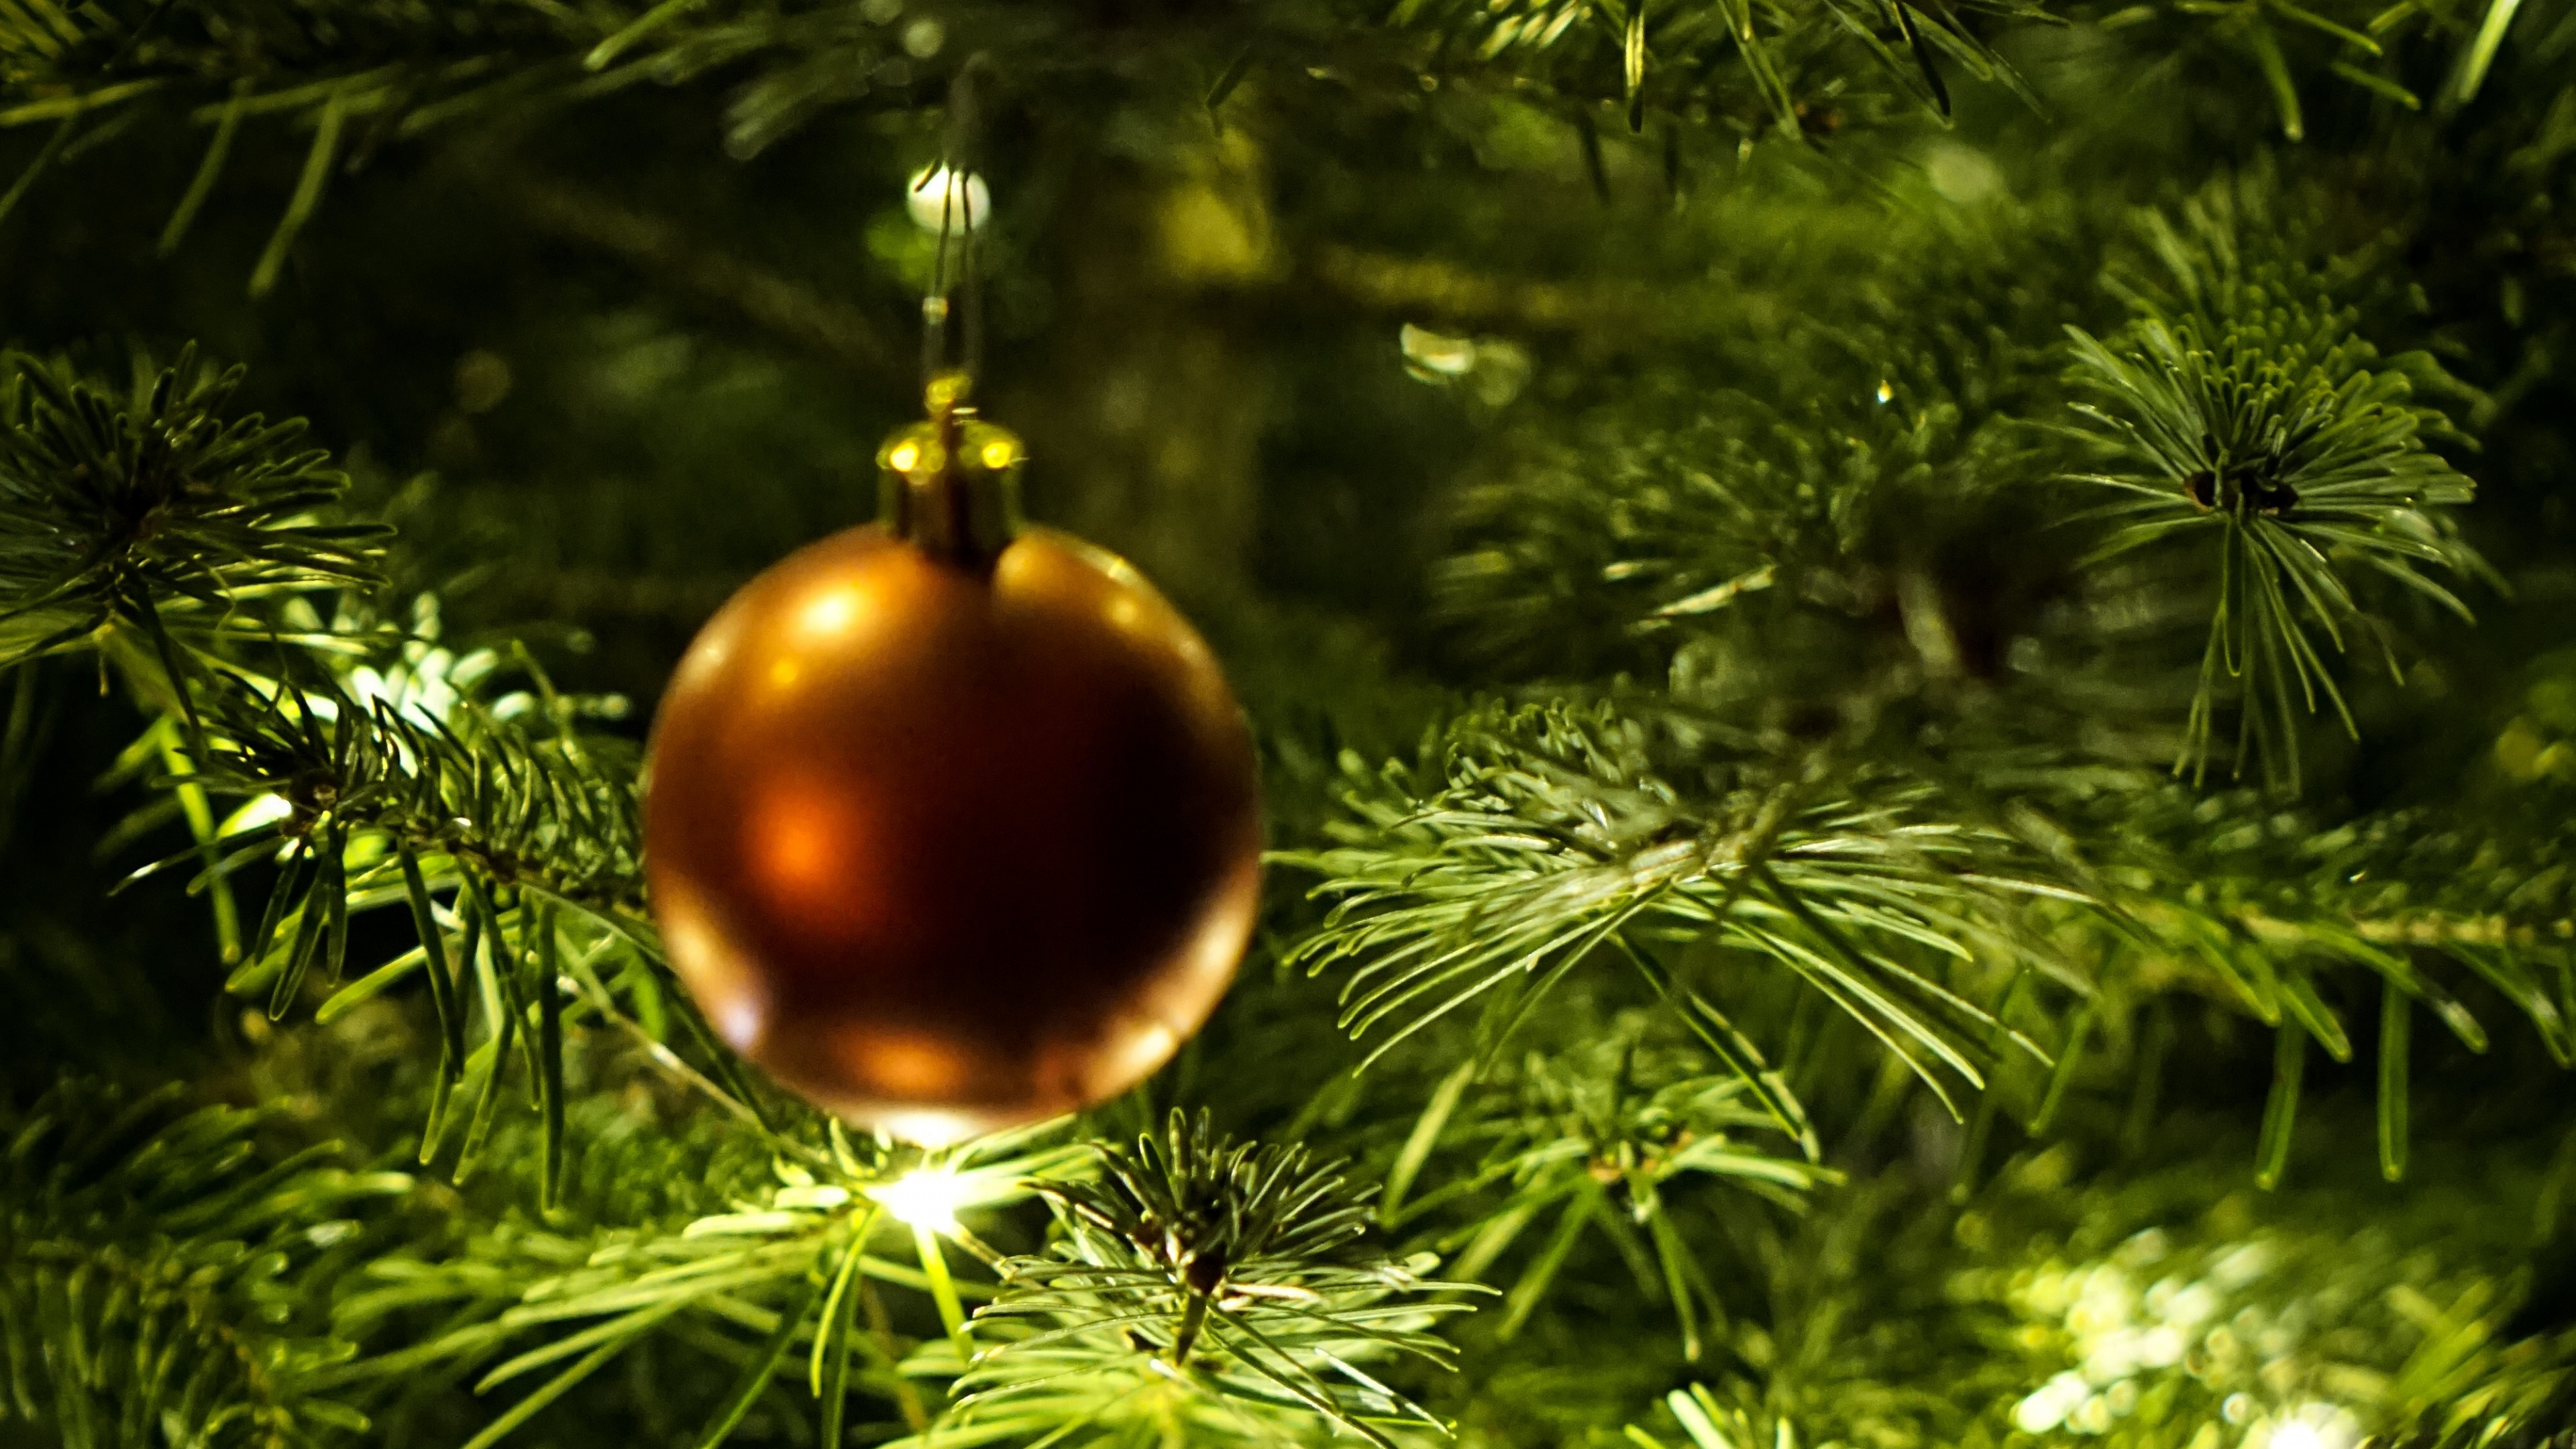 新的一年, 圣诞节那天, 圣诞节的装饰品, 圣诞装饰, 圣诞树 壁纸 3840x2160 允许